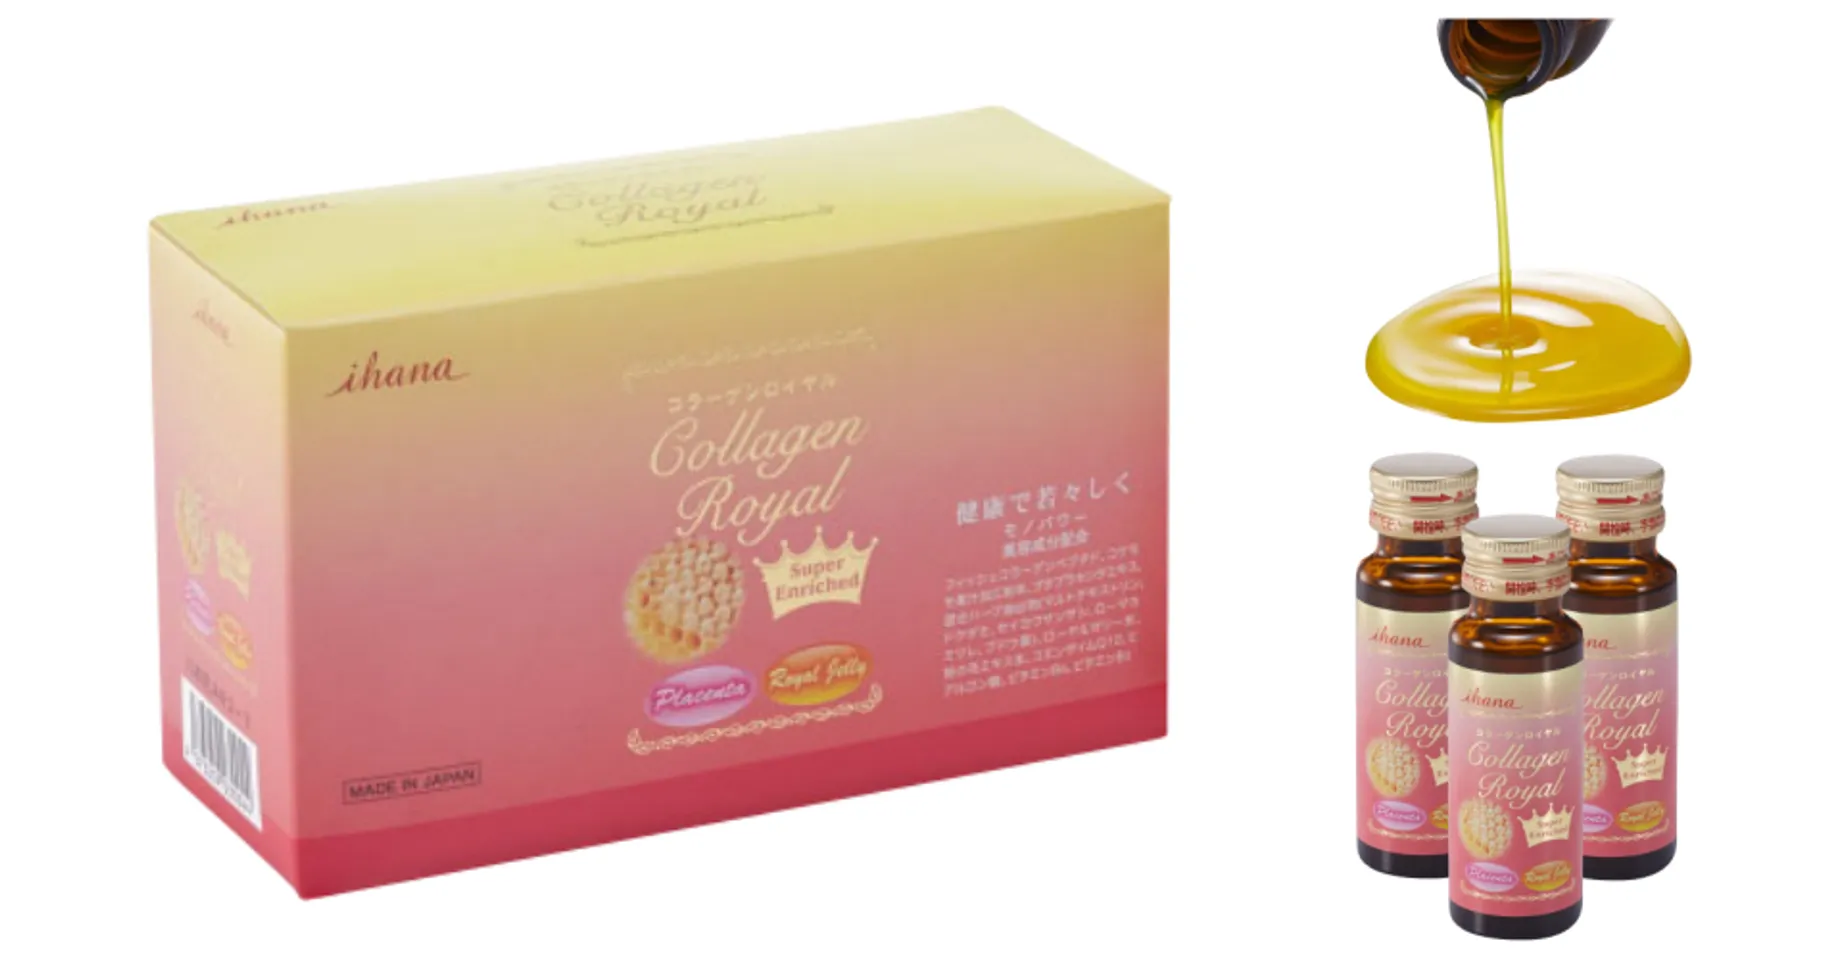 Collagen Royal Super Enrich Ihana chính hãng Nhật Bản